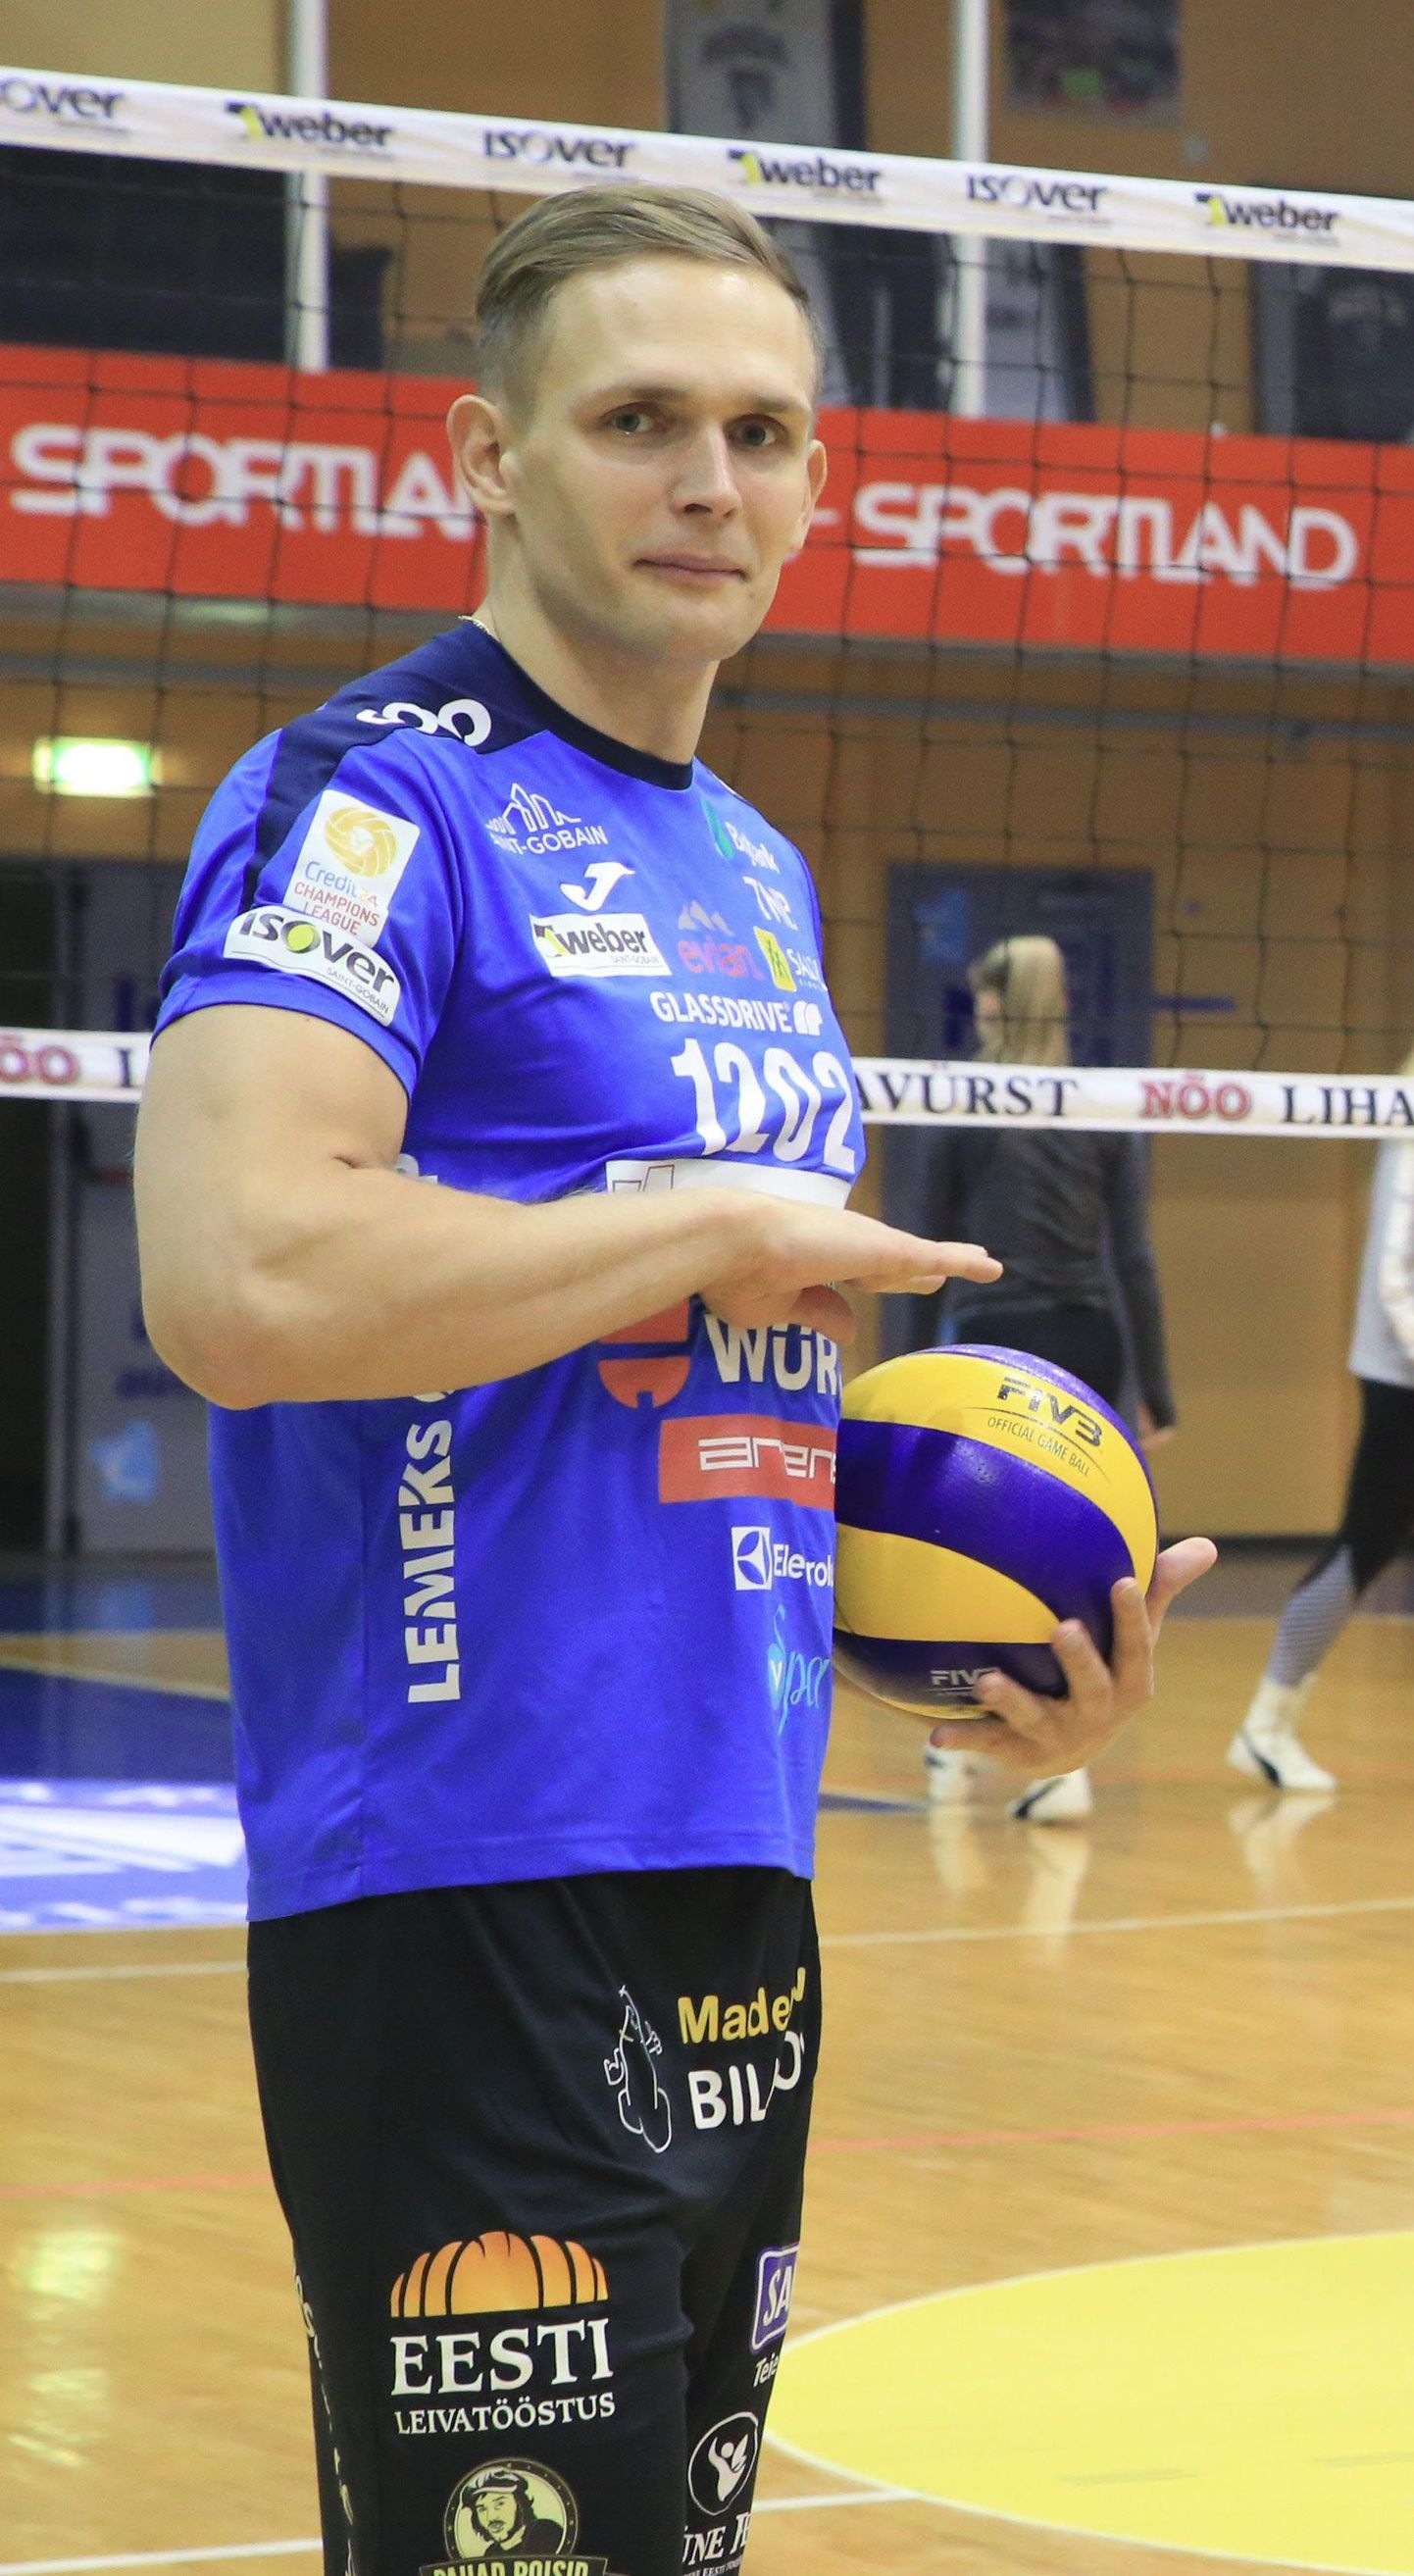 Viljandimaalt pärit võrkpallur Meelis Kivisild alustas oma kolmandat hooaega Tartu meeskonnas ning loodab tänavu koos võistkonnakaaslastega teenida vähemalt ühe kolmest tiitlist.